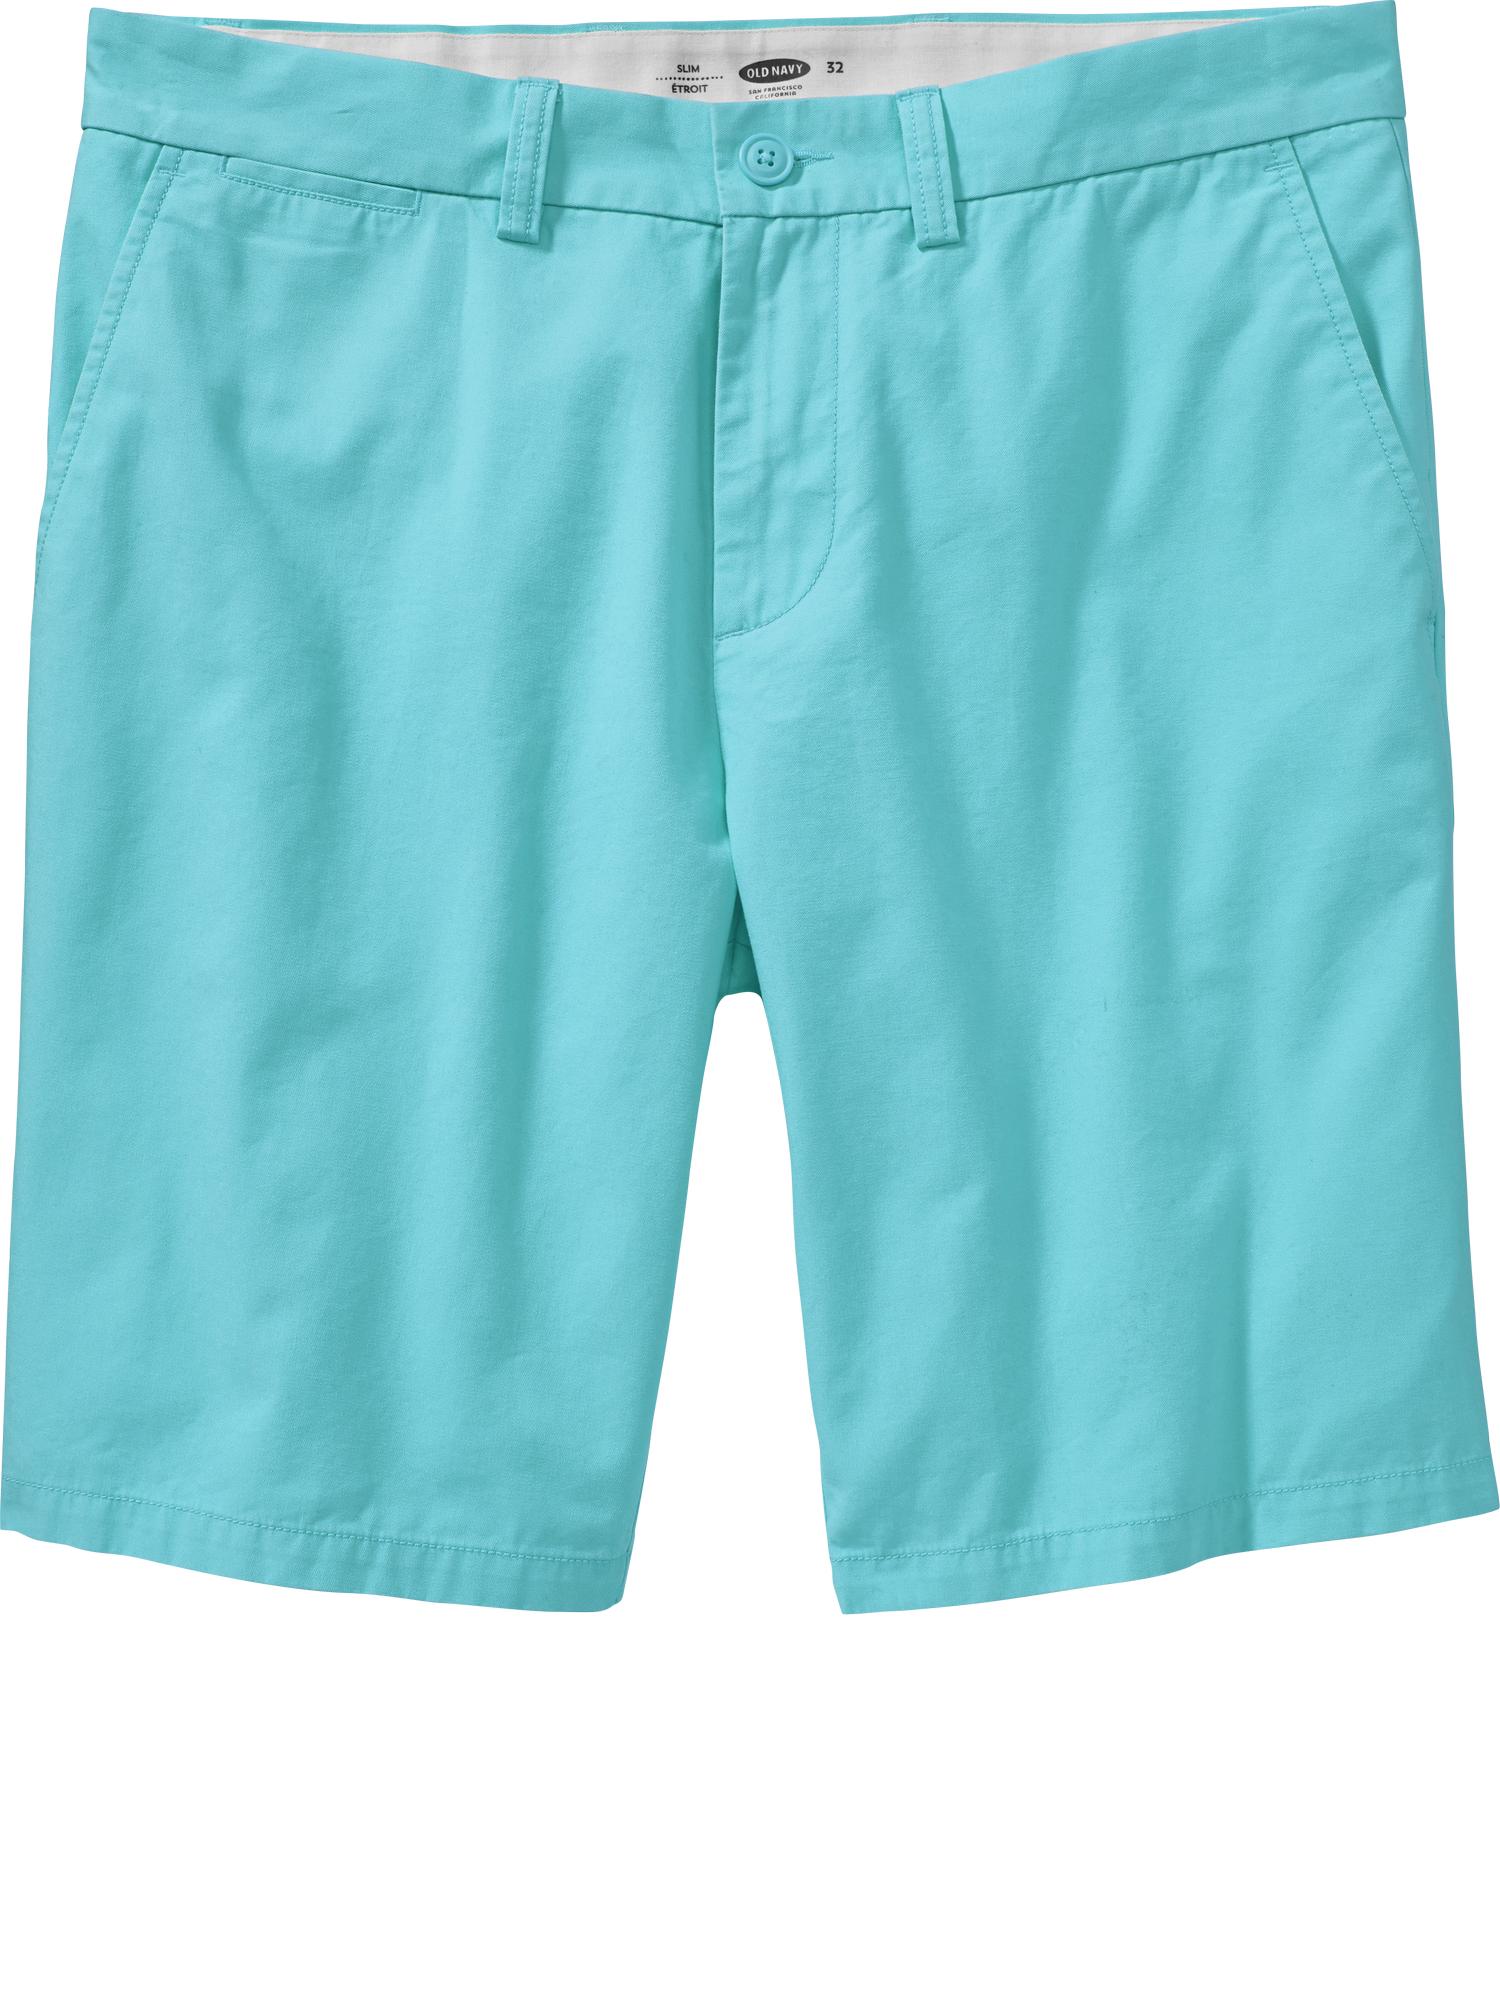 Men's Slim-Fit Twill Shorts (9 1/2